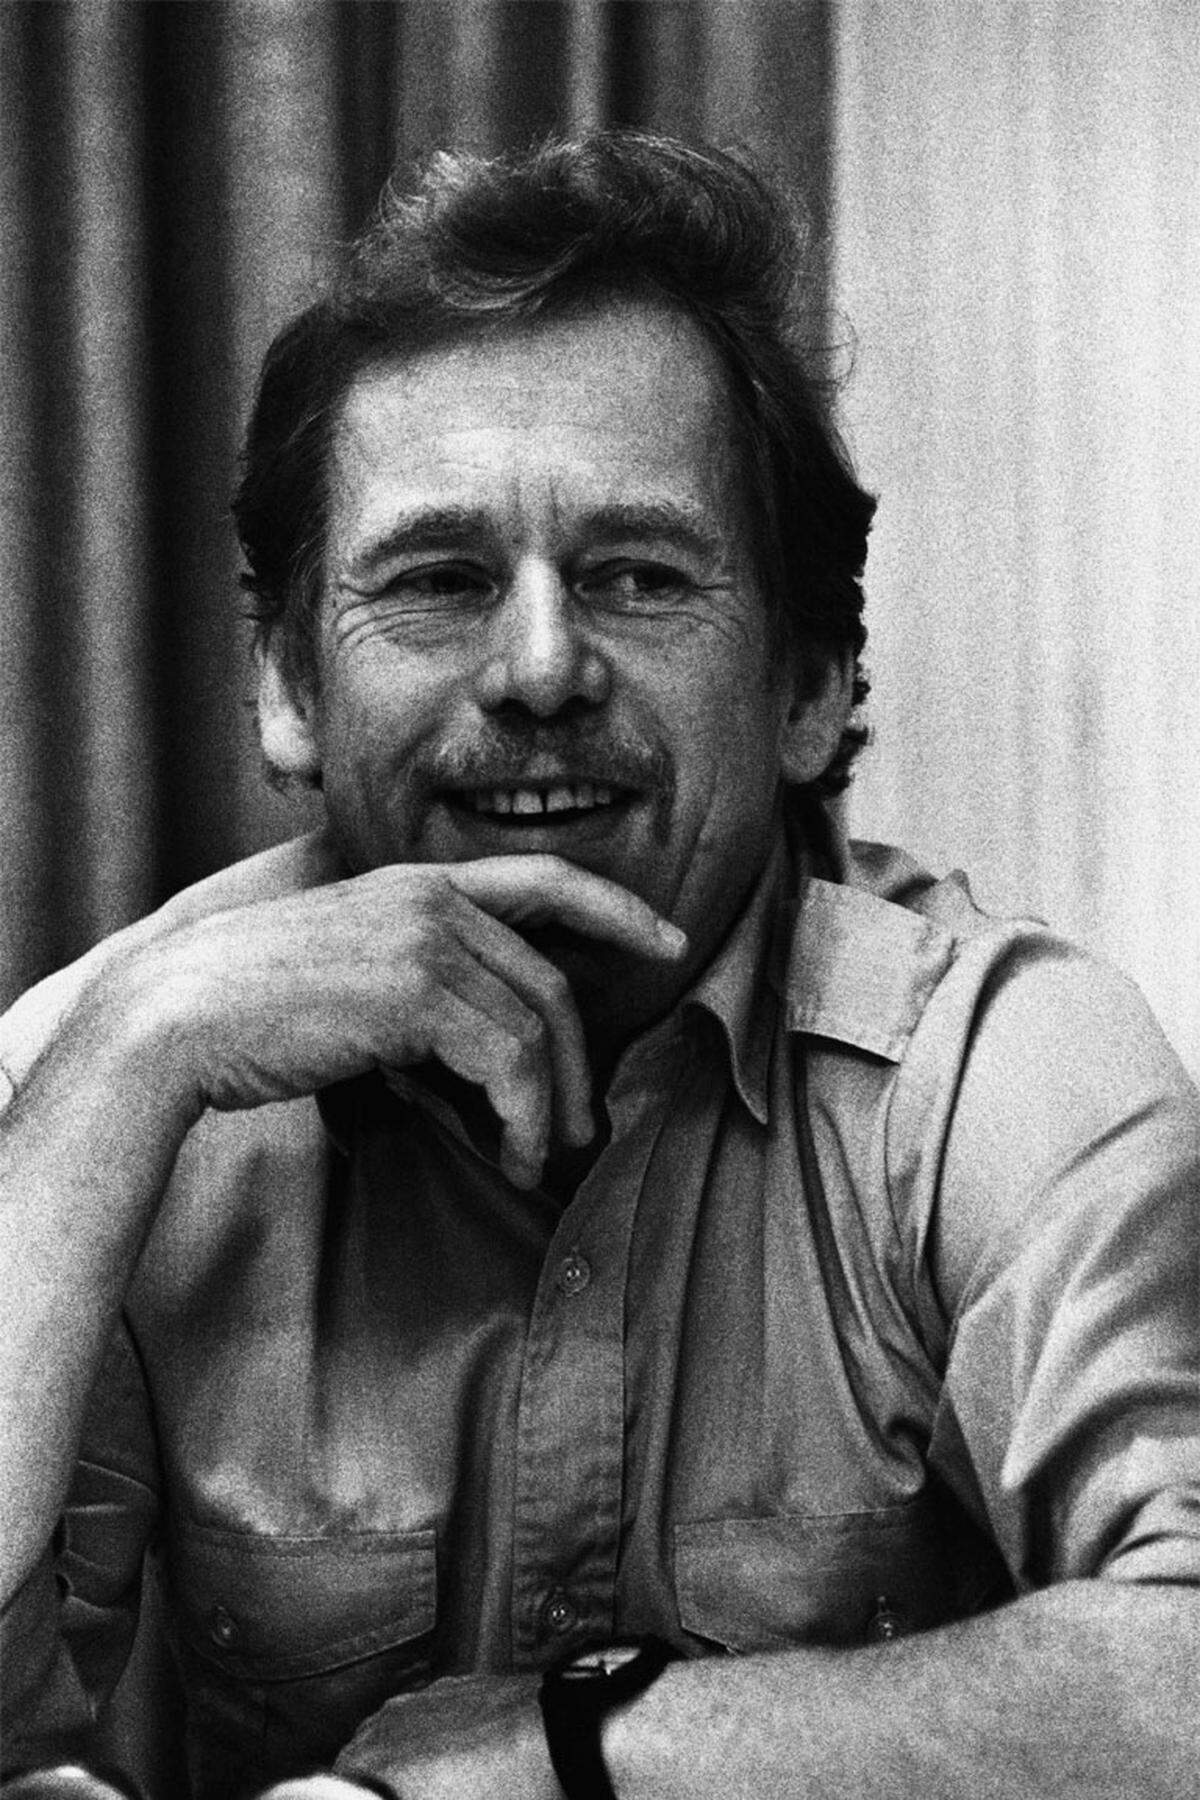 Nur zwei Monate nach seinem 75. Geburtstag ist der frühere Dissident und ehemalige tschechische Staatspräsident Vaclav Havel am 18. Dezember im Schlaf gestorben. Seit mehreren Monaten war seine angeschlagene Gesundheit sichtbar.